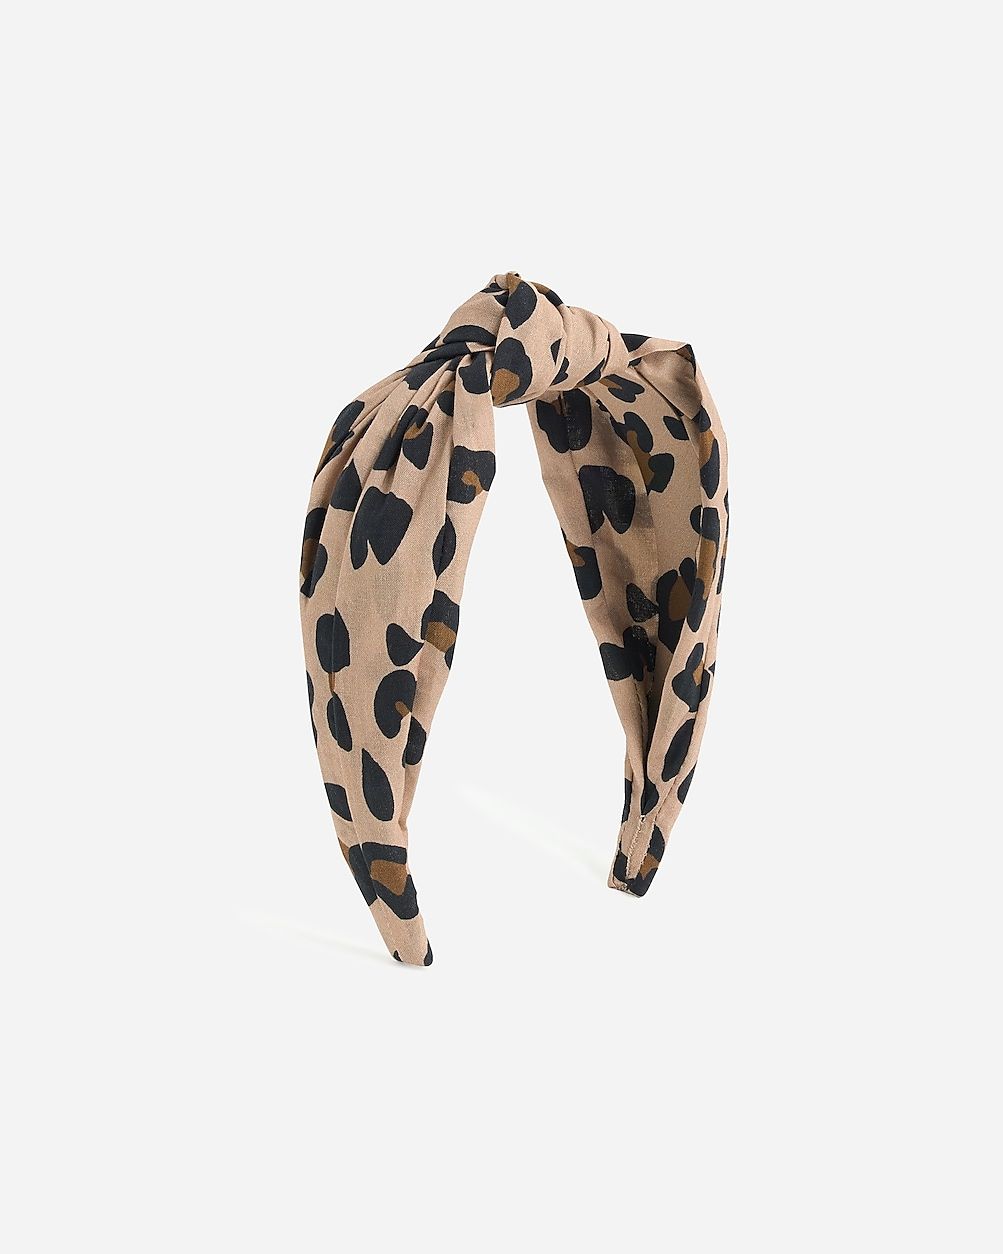 Knot headband in leopard | J.Crew US